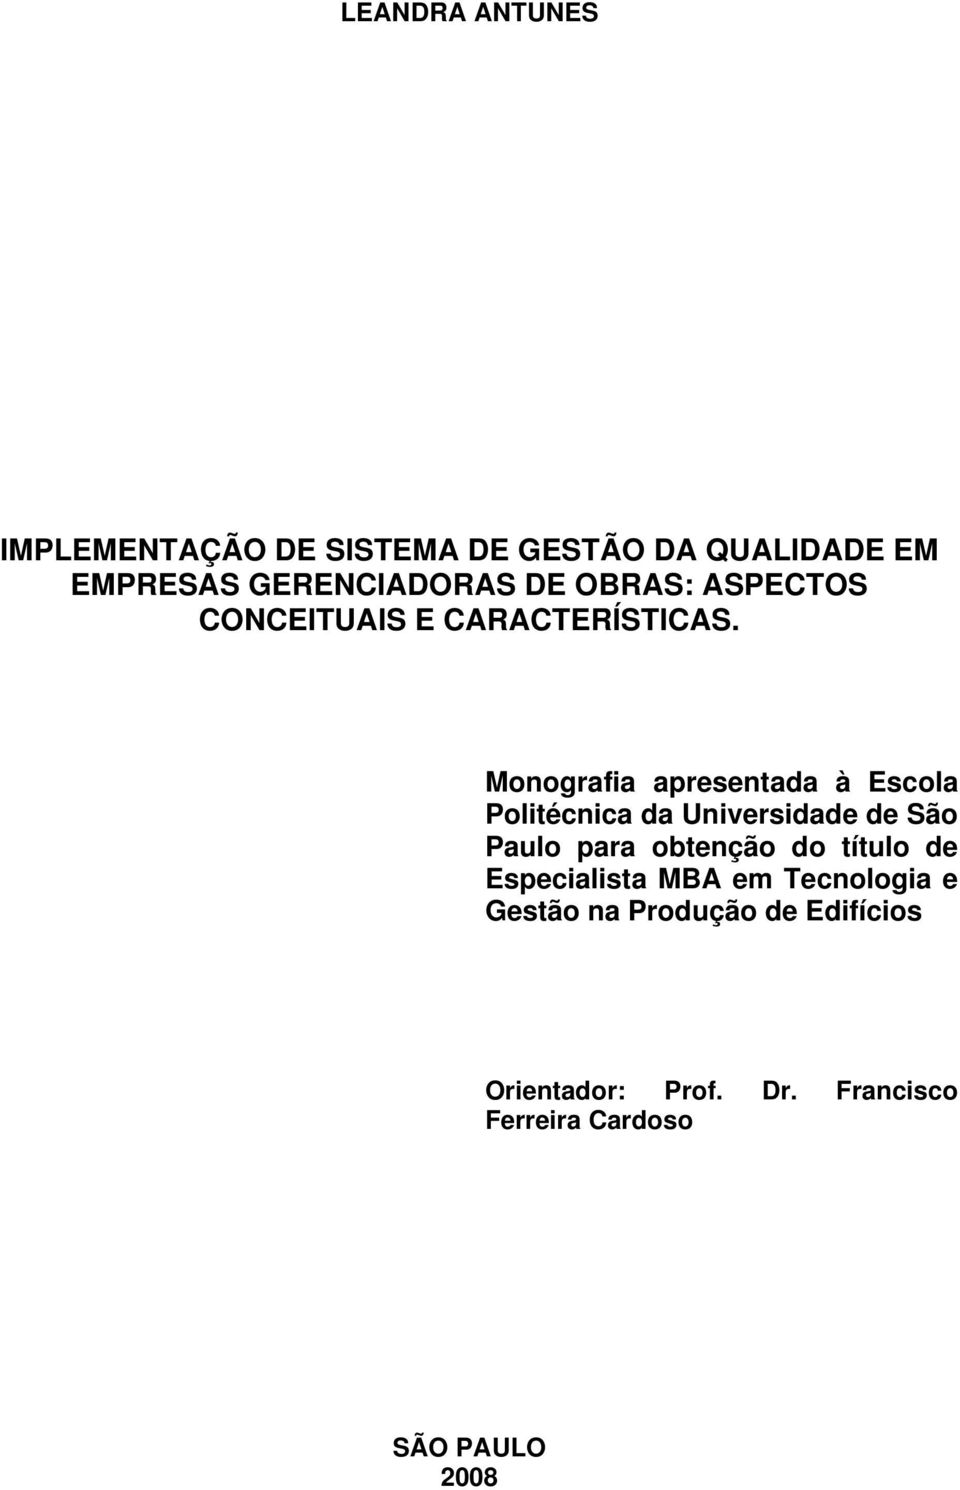 Monografia apresentada à Escola Politécnica da Universidade de São Paulo para obtenção do